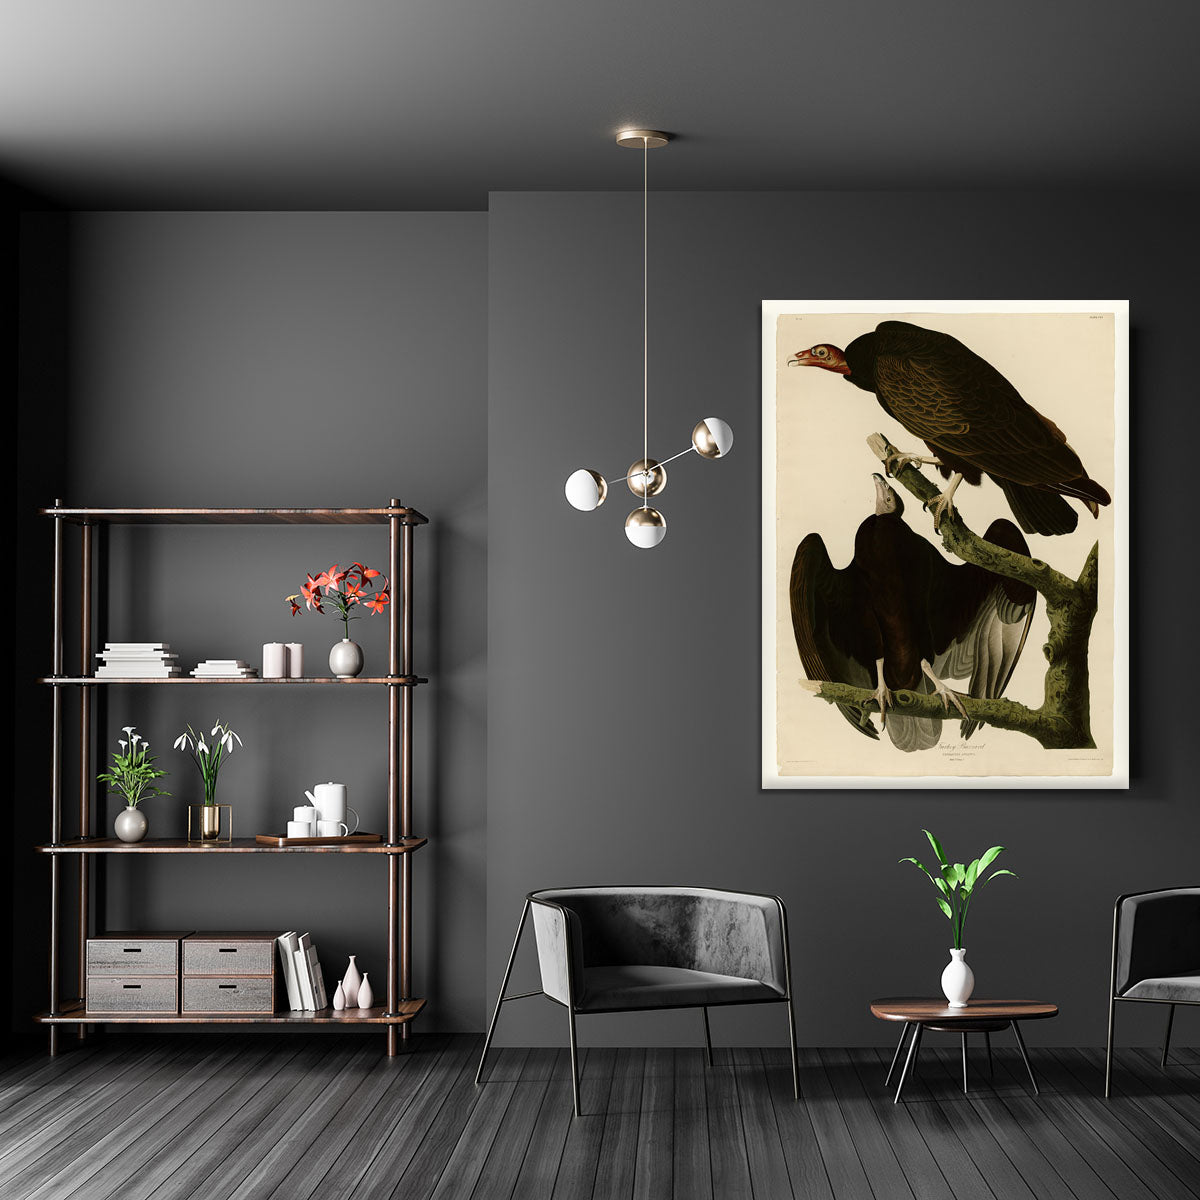 Turkey Buzzard by Audubon Canvas Print or Poster - Canvas Art Rocks - 5